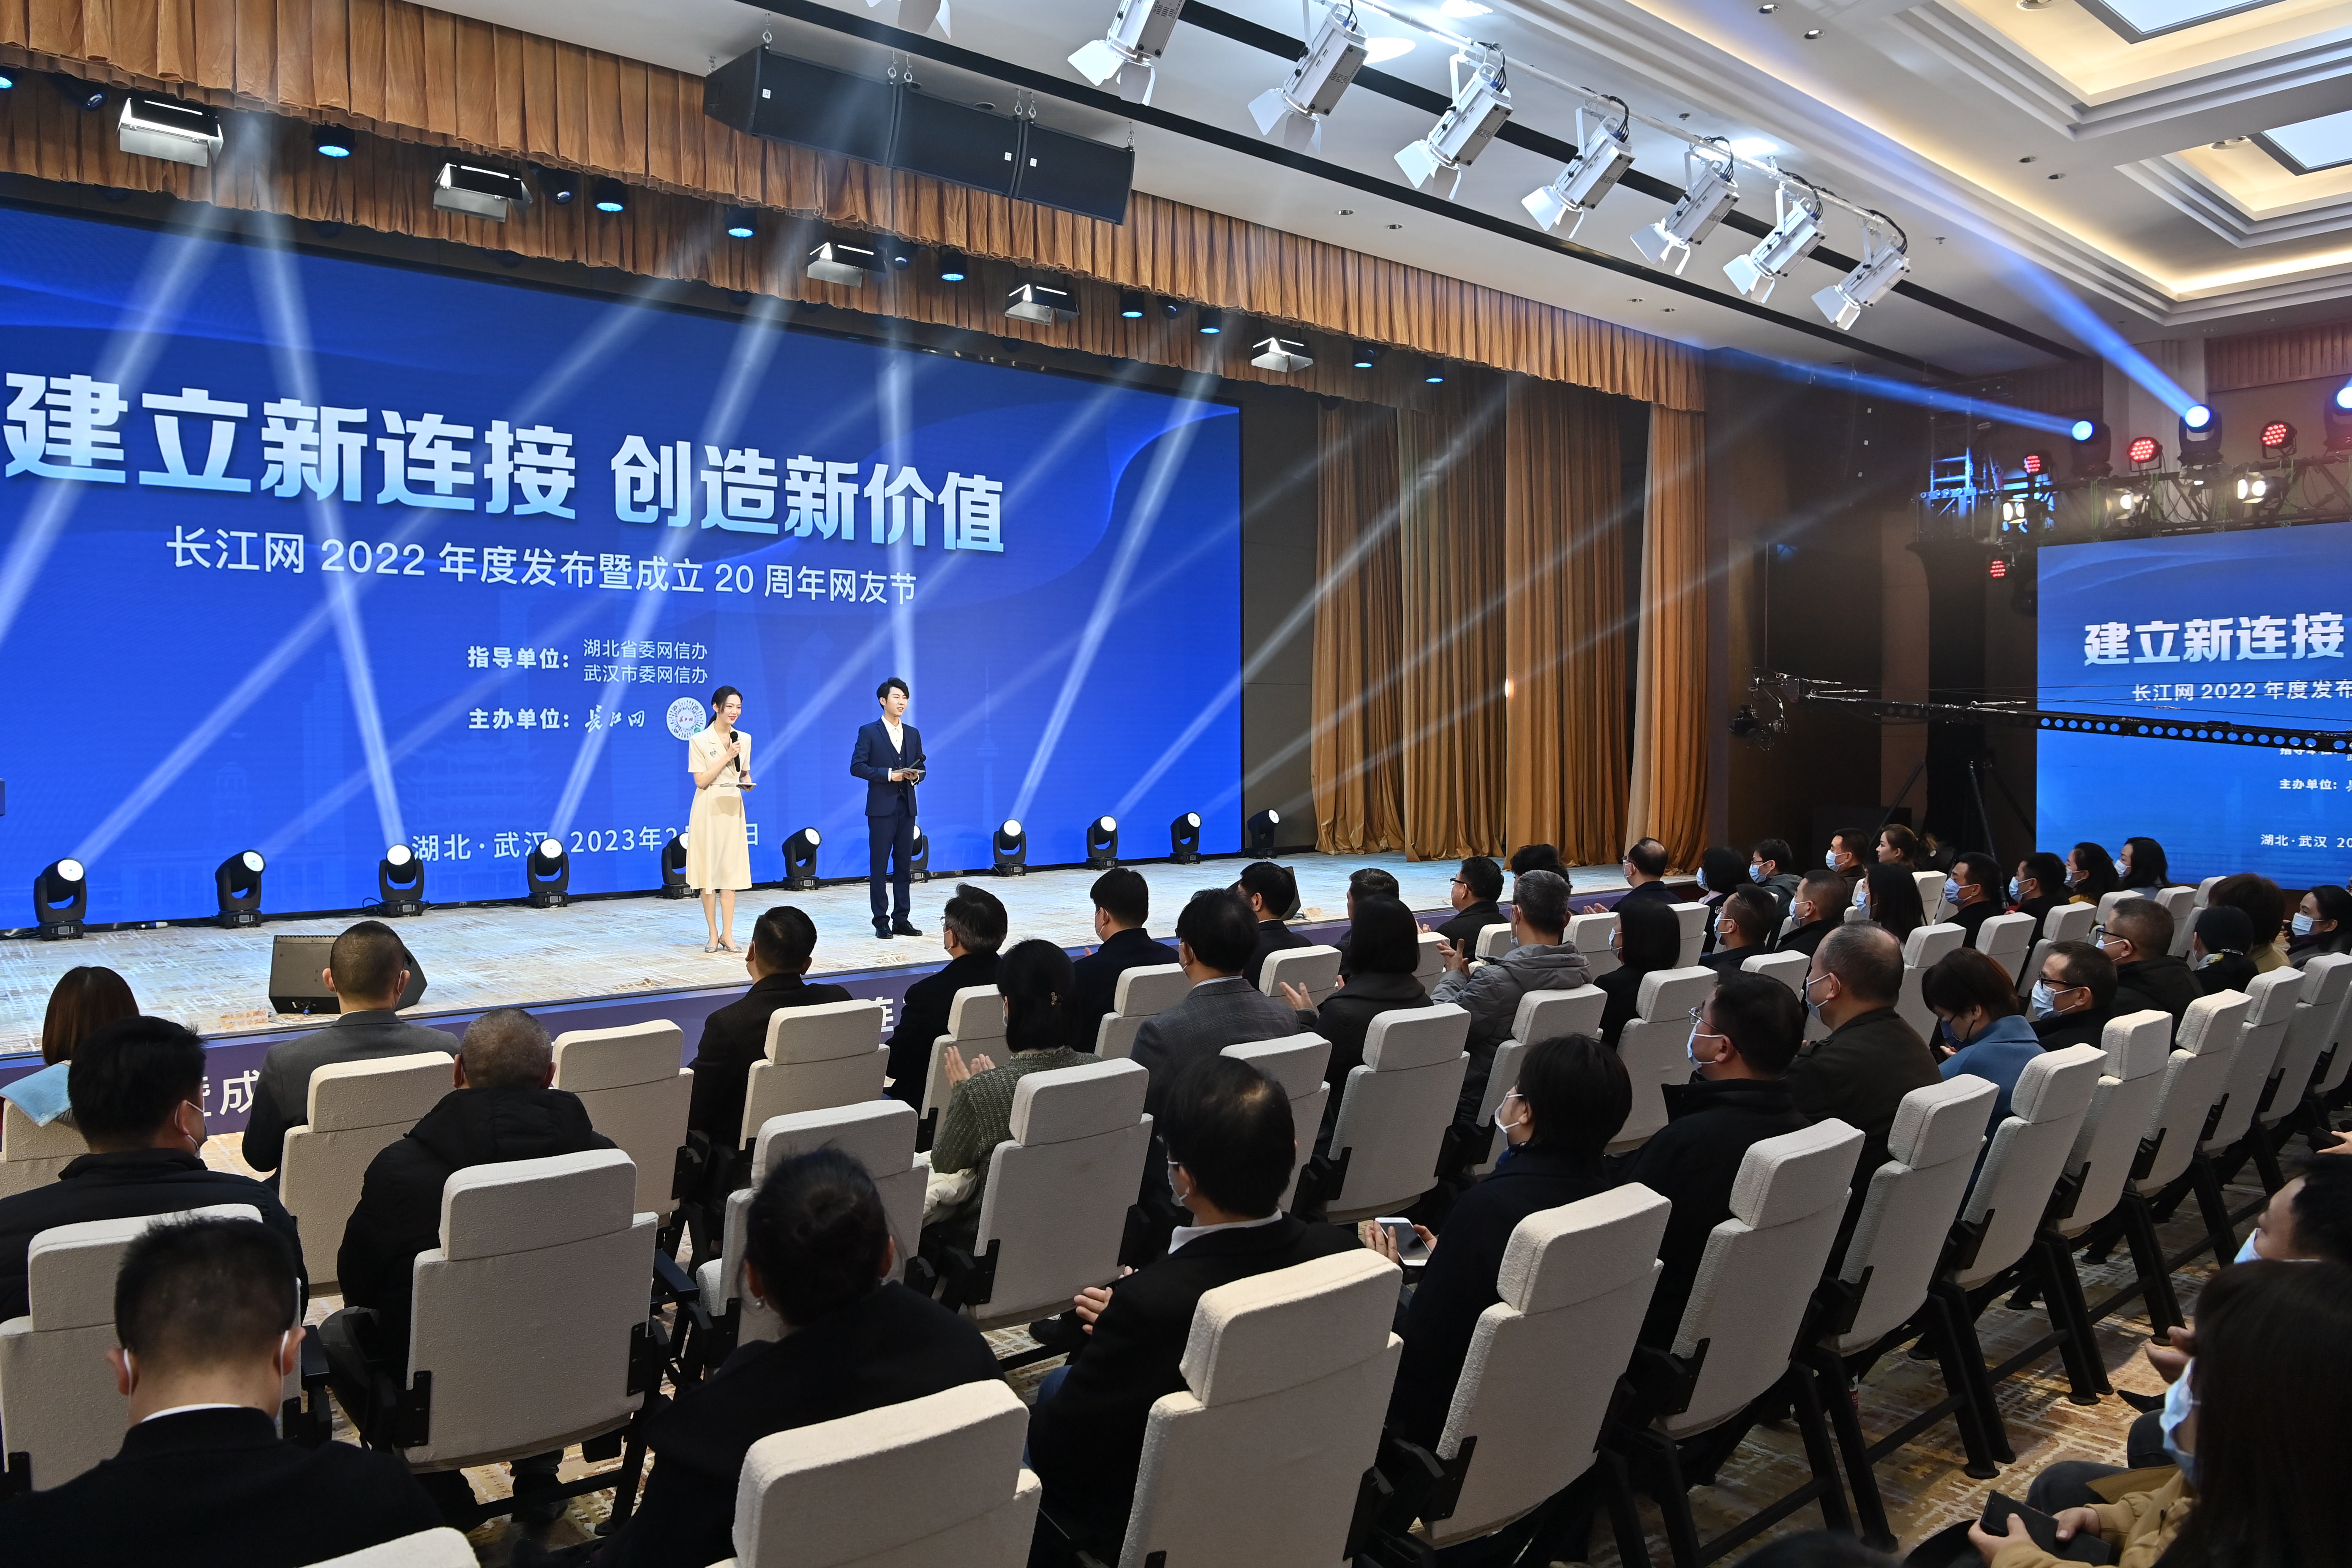 以“长江”为名，“网”聚向上的力量，长江网首次发布媒体责任报告